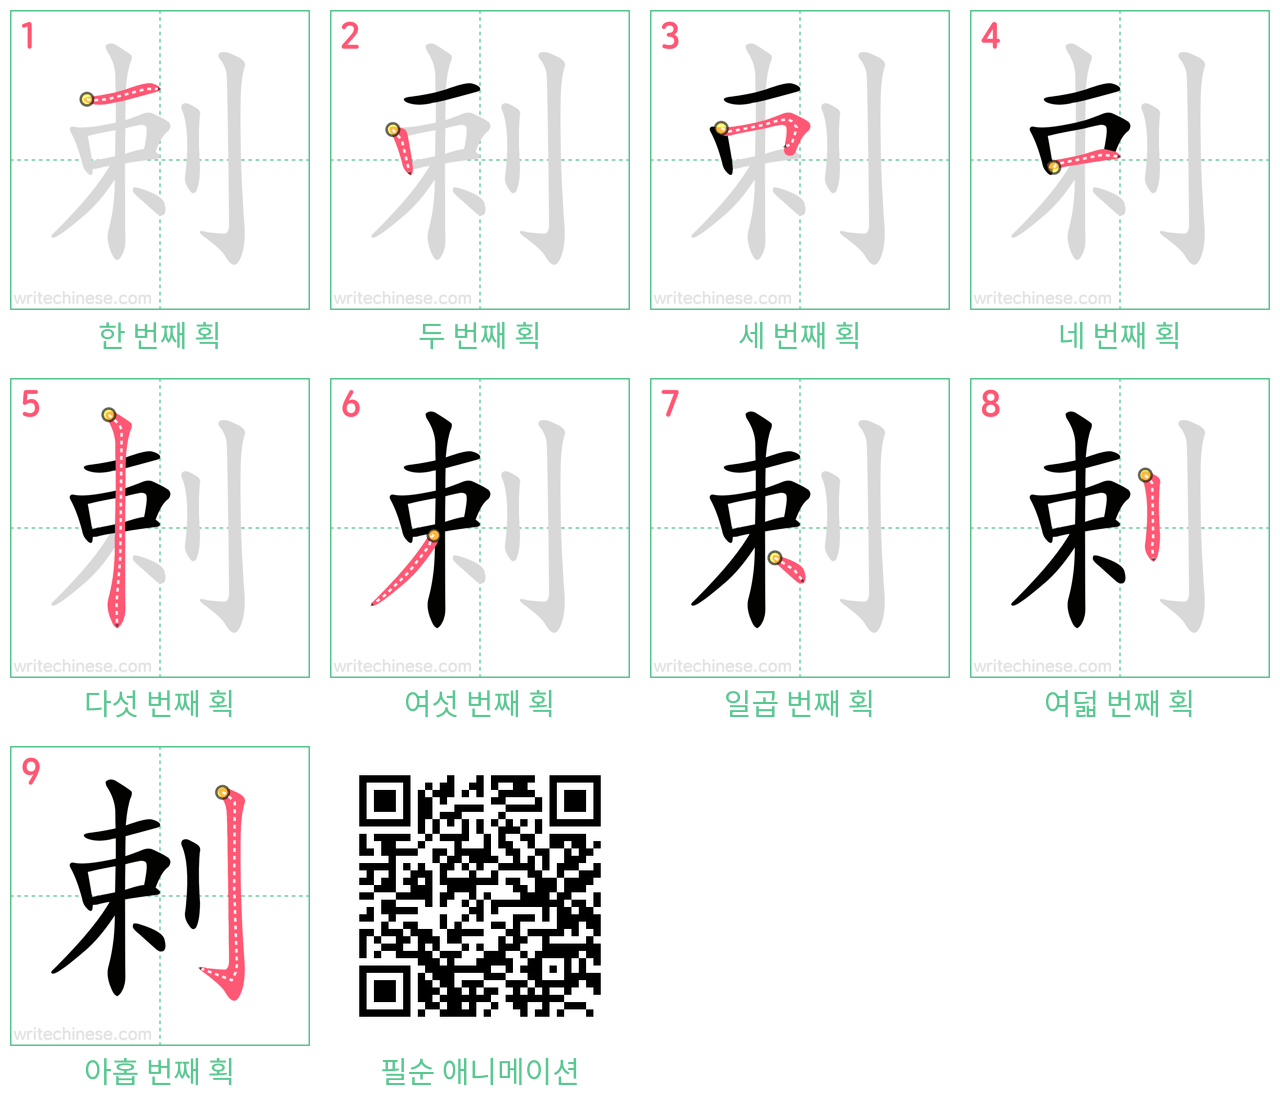 剌 step-by-step stroke order diagrams